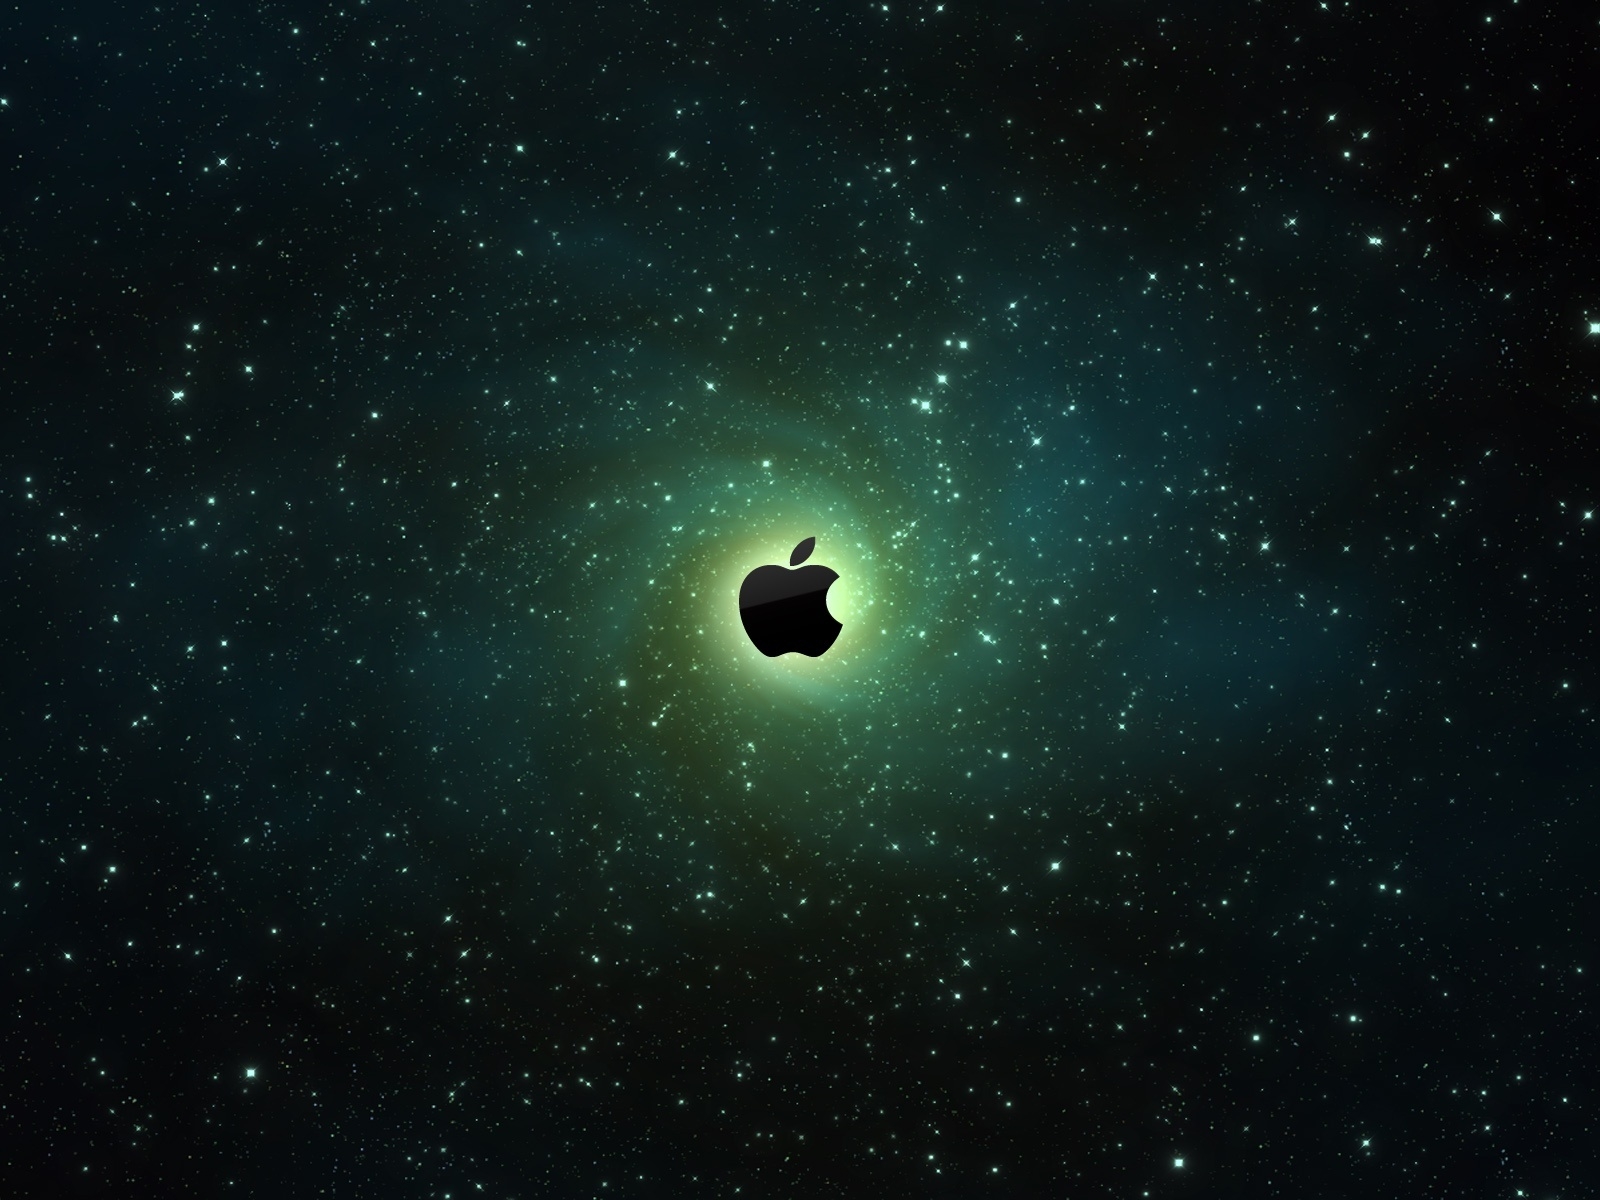 Apple Vortex for 1600 x 1200 resolution